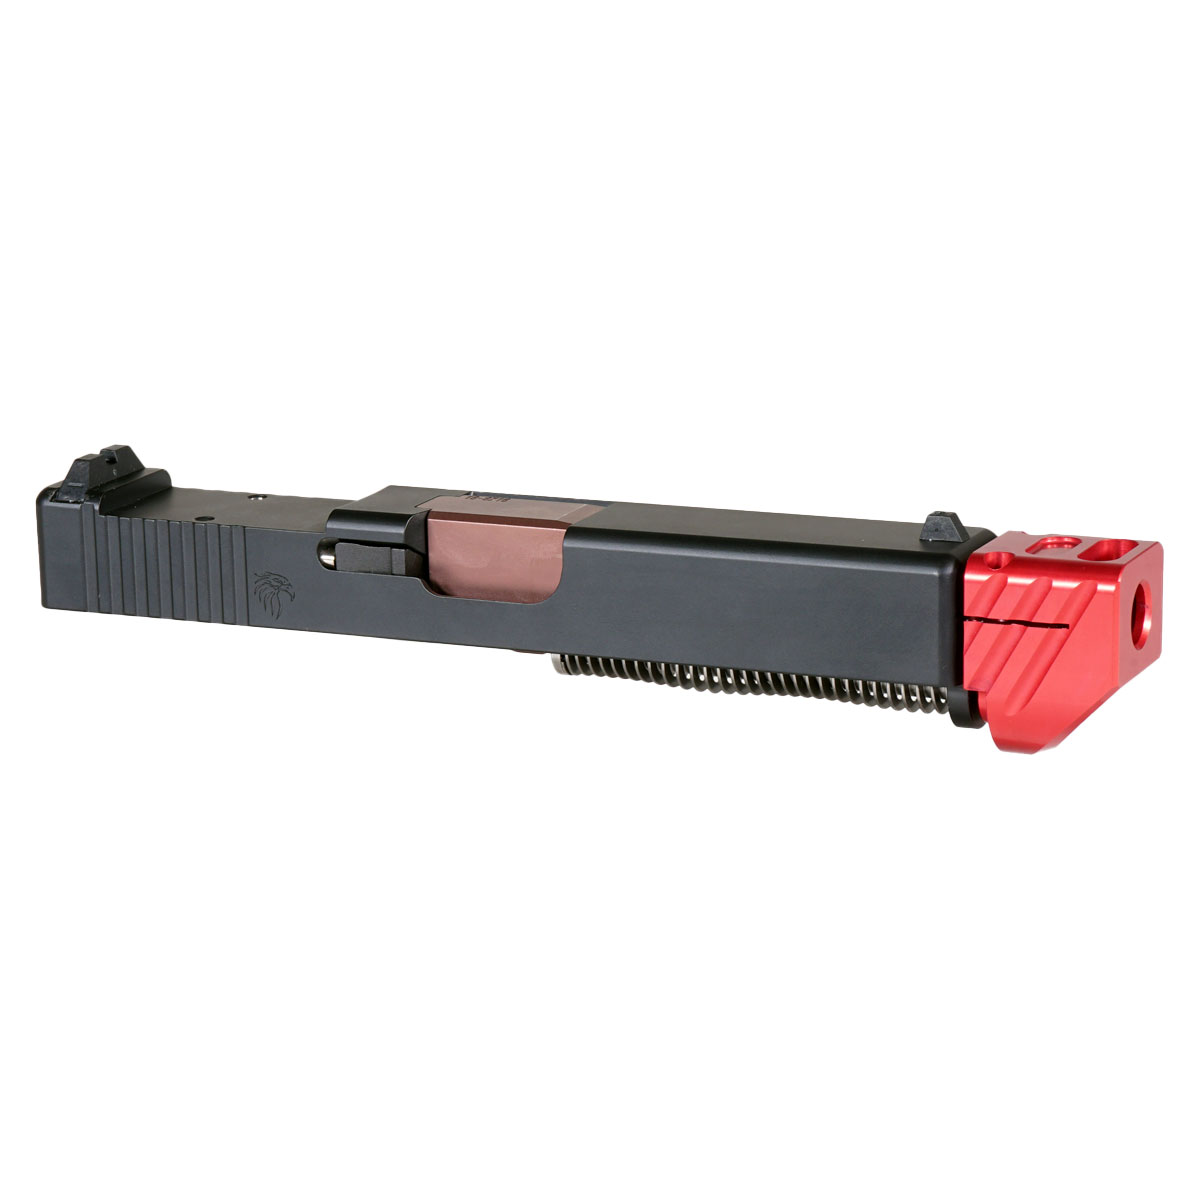 MMC 'Blockbuster V3 w/ Red Compensator' 9mm Complete Slide Kit - Glock 19 Gen 1-3 Compatible